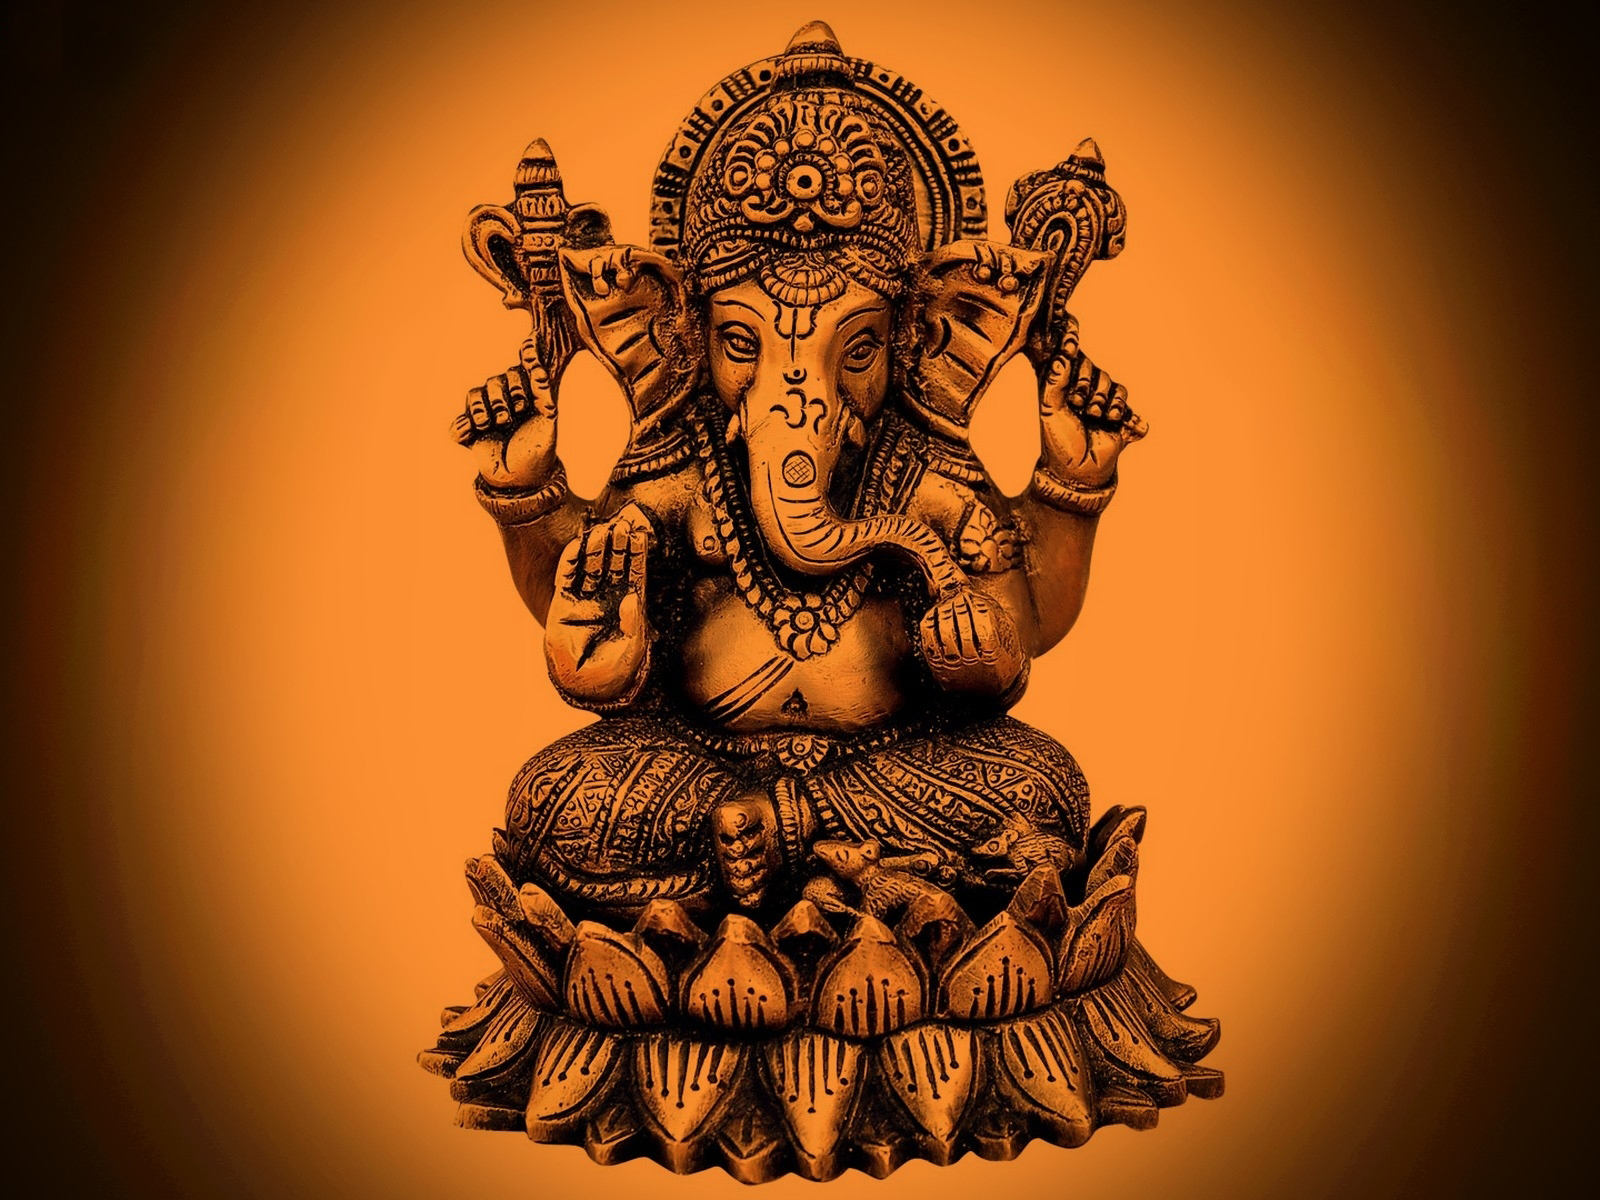 Hanuman Ji Mantra in Image